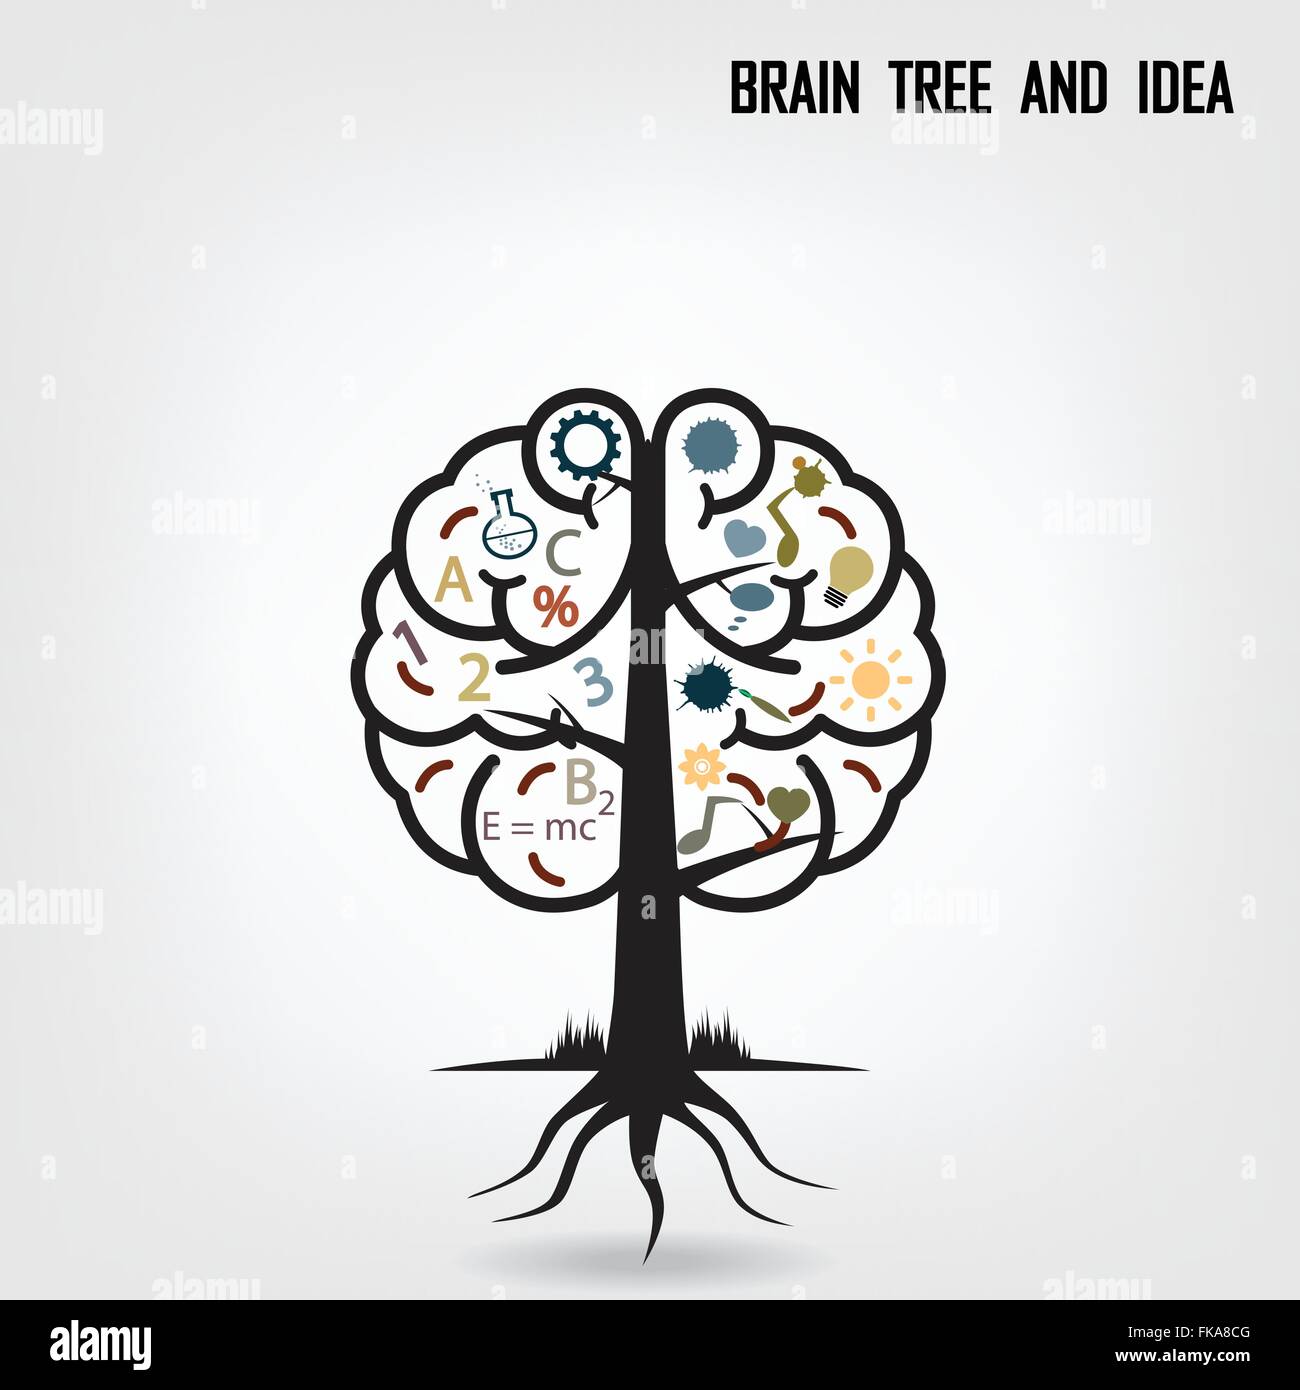 Kreative Gehirnhälfte Idee Konzept Hintergrunddesign für Plakat Flyer Abdeckung Broschüre, Geschäftsidee, abstrakten Hintergrund. Stock Vektor